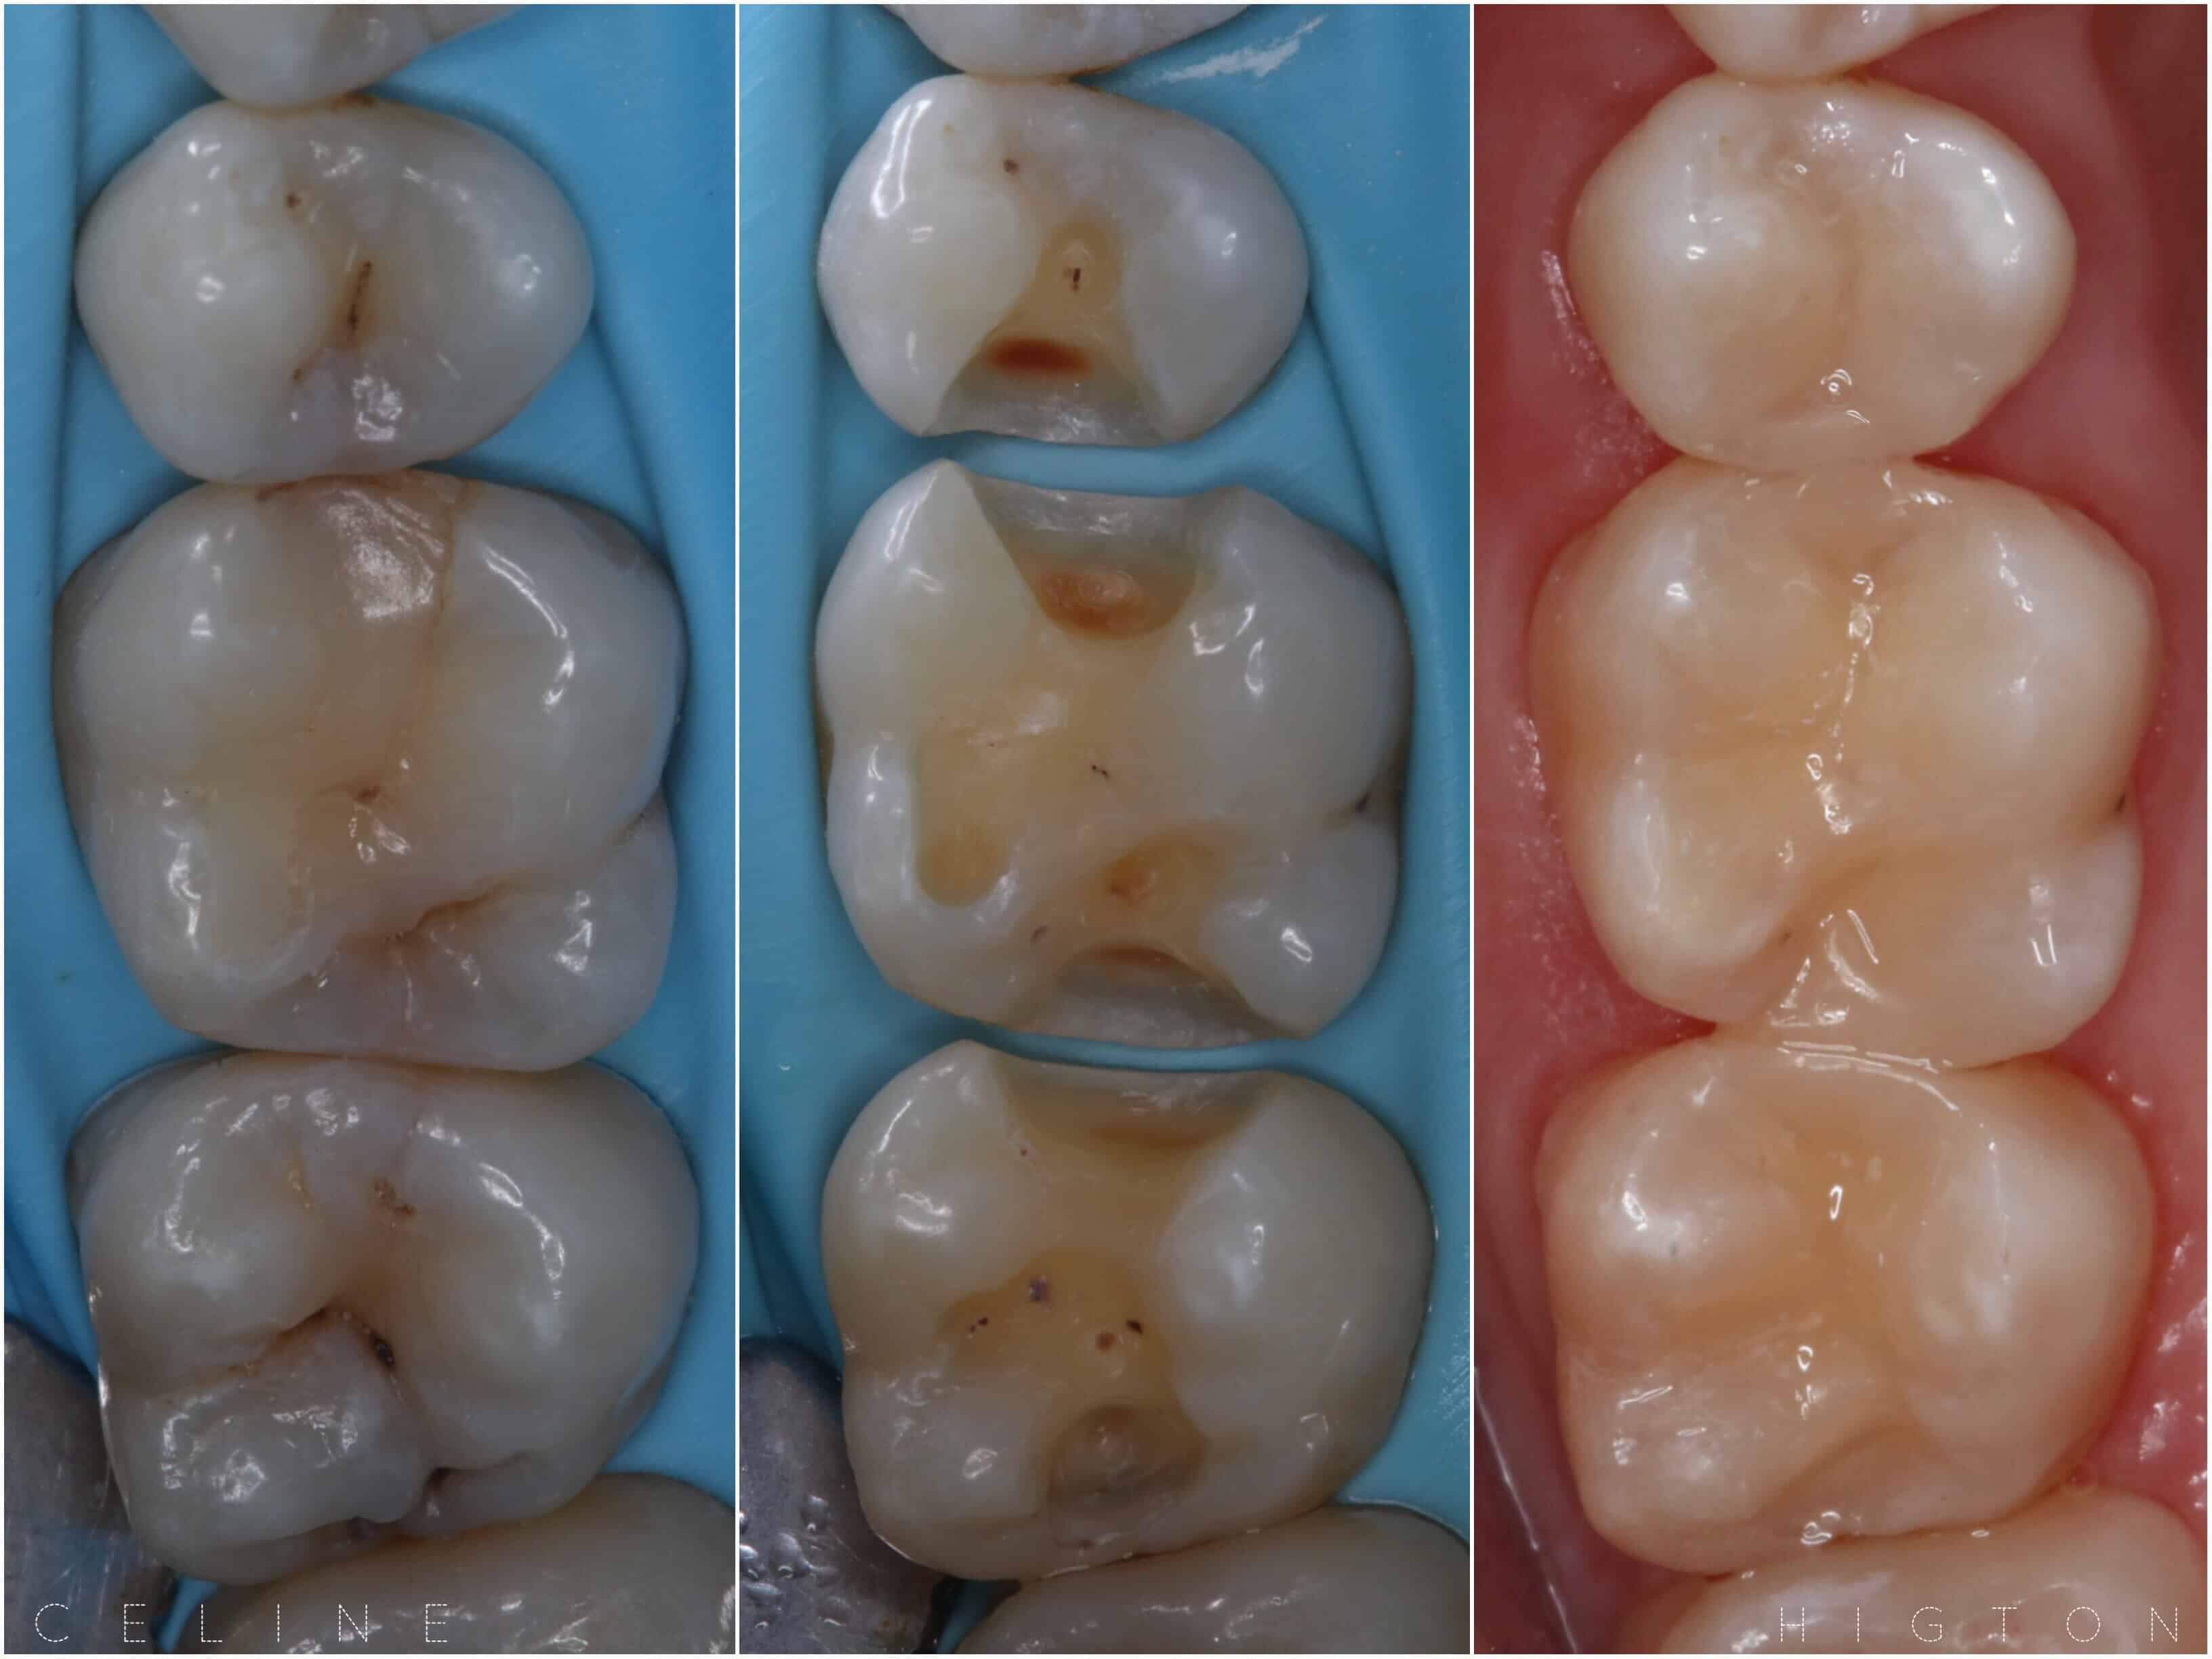 Tooth Filling By Dr Celine Higton At Beverley Dental Raynes Park London